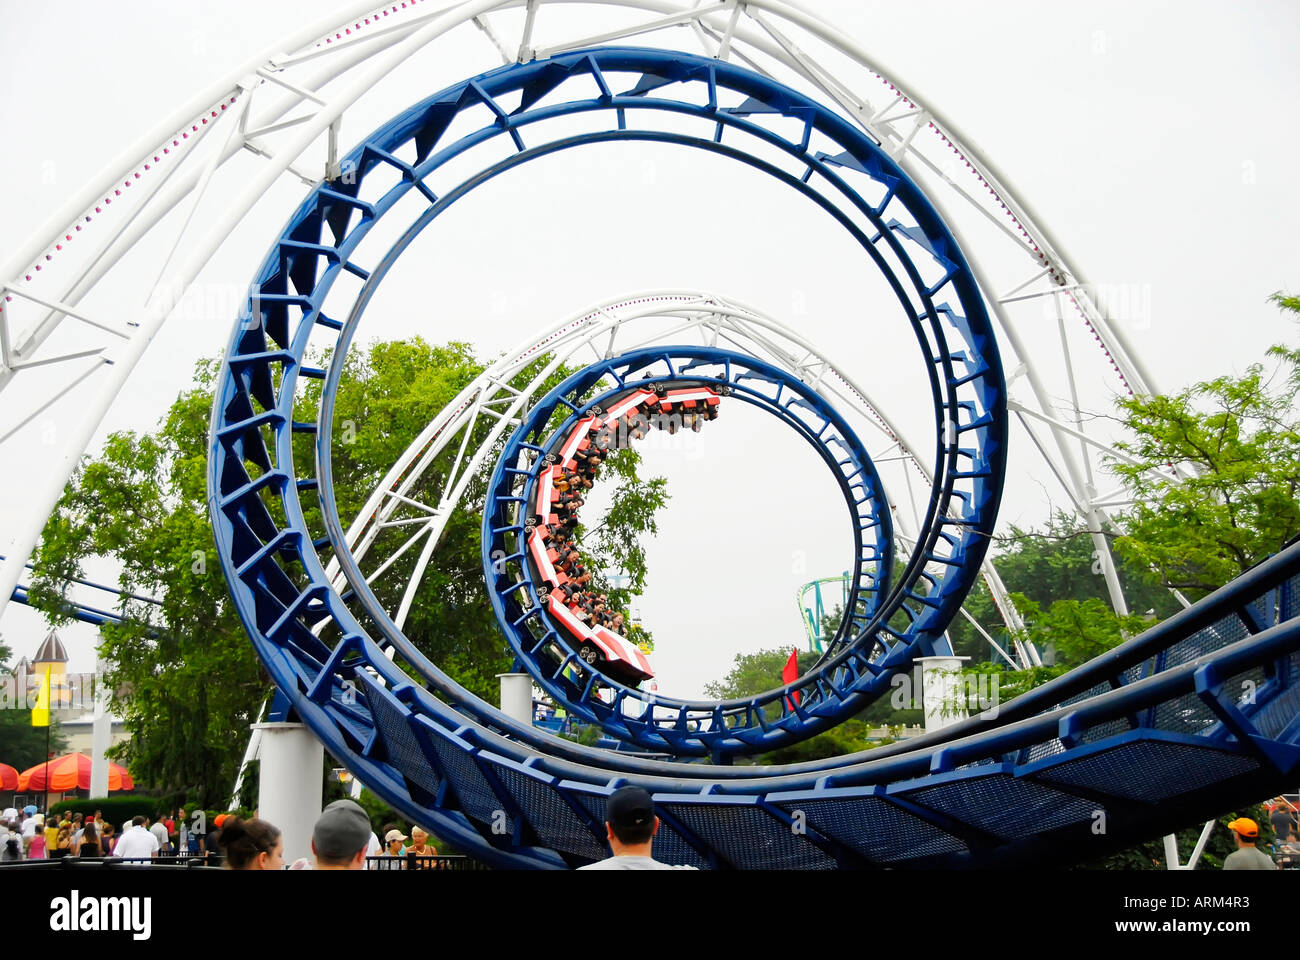 Cedar Point Amusement Park Sandusky Ohio OH Stock Photo